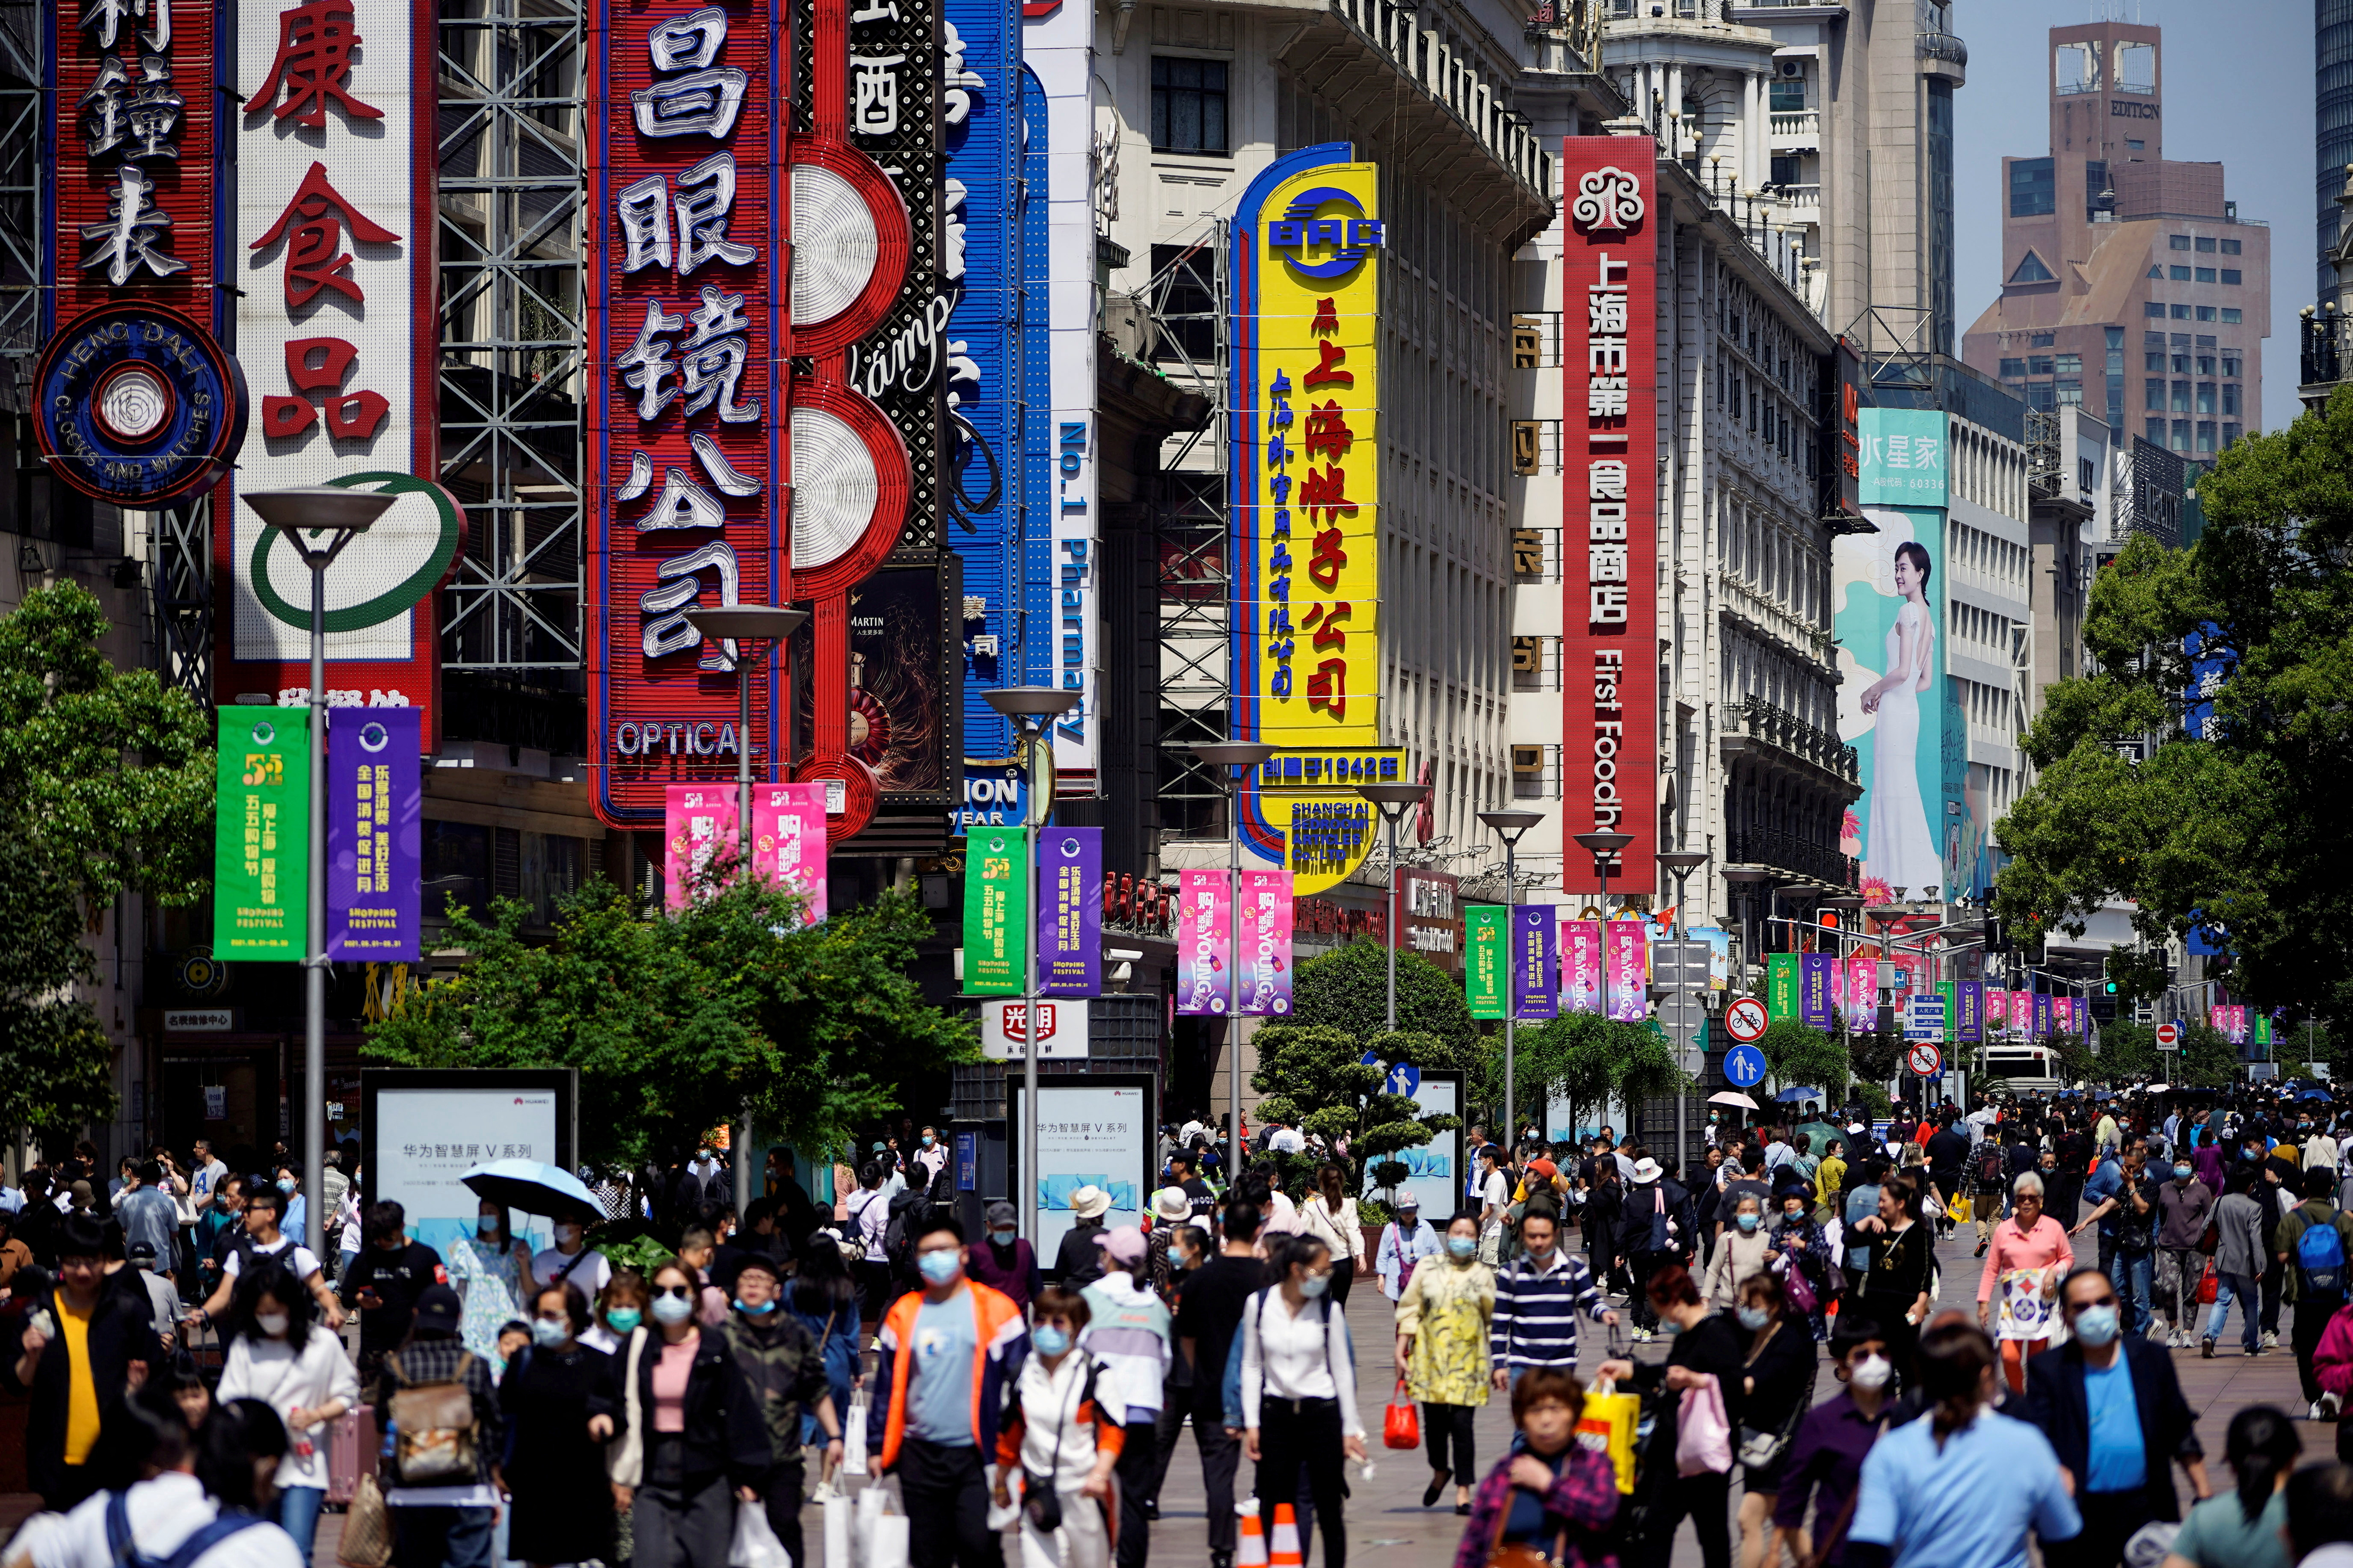 La calle peatonal Nanjing, una de las principales arterias comerciales de Shanghai (REUTERS)